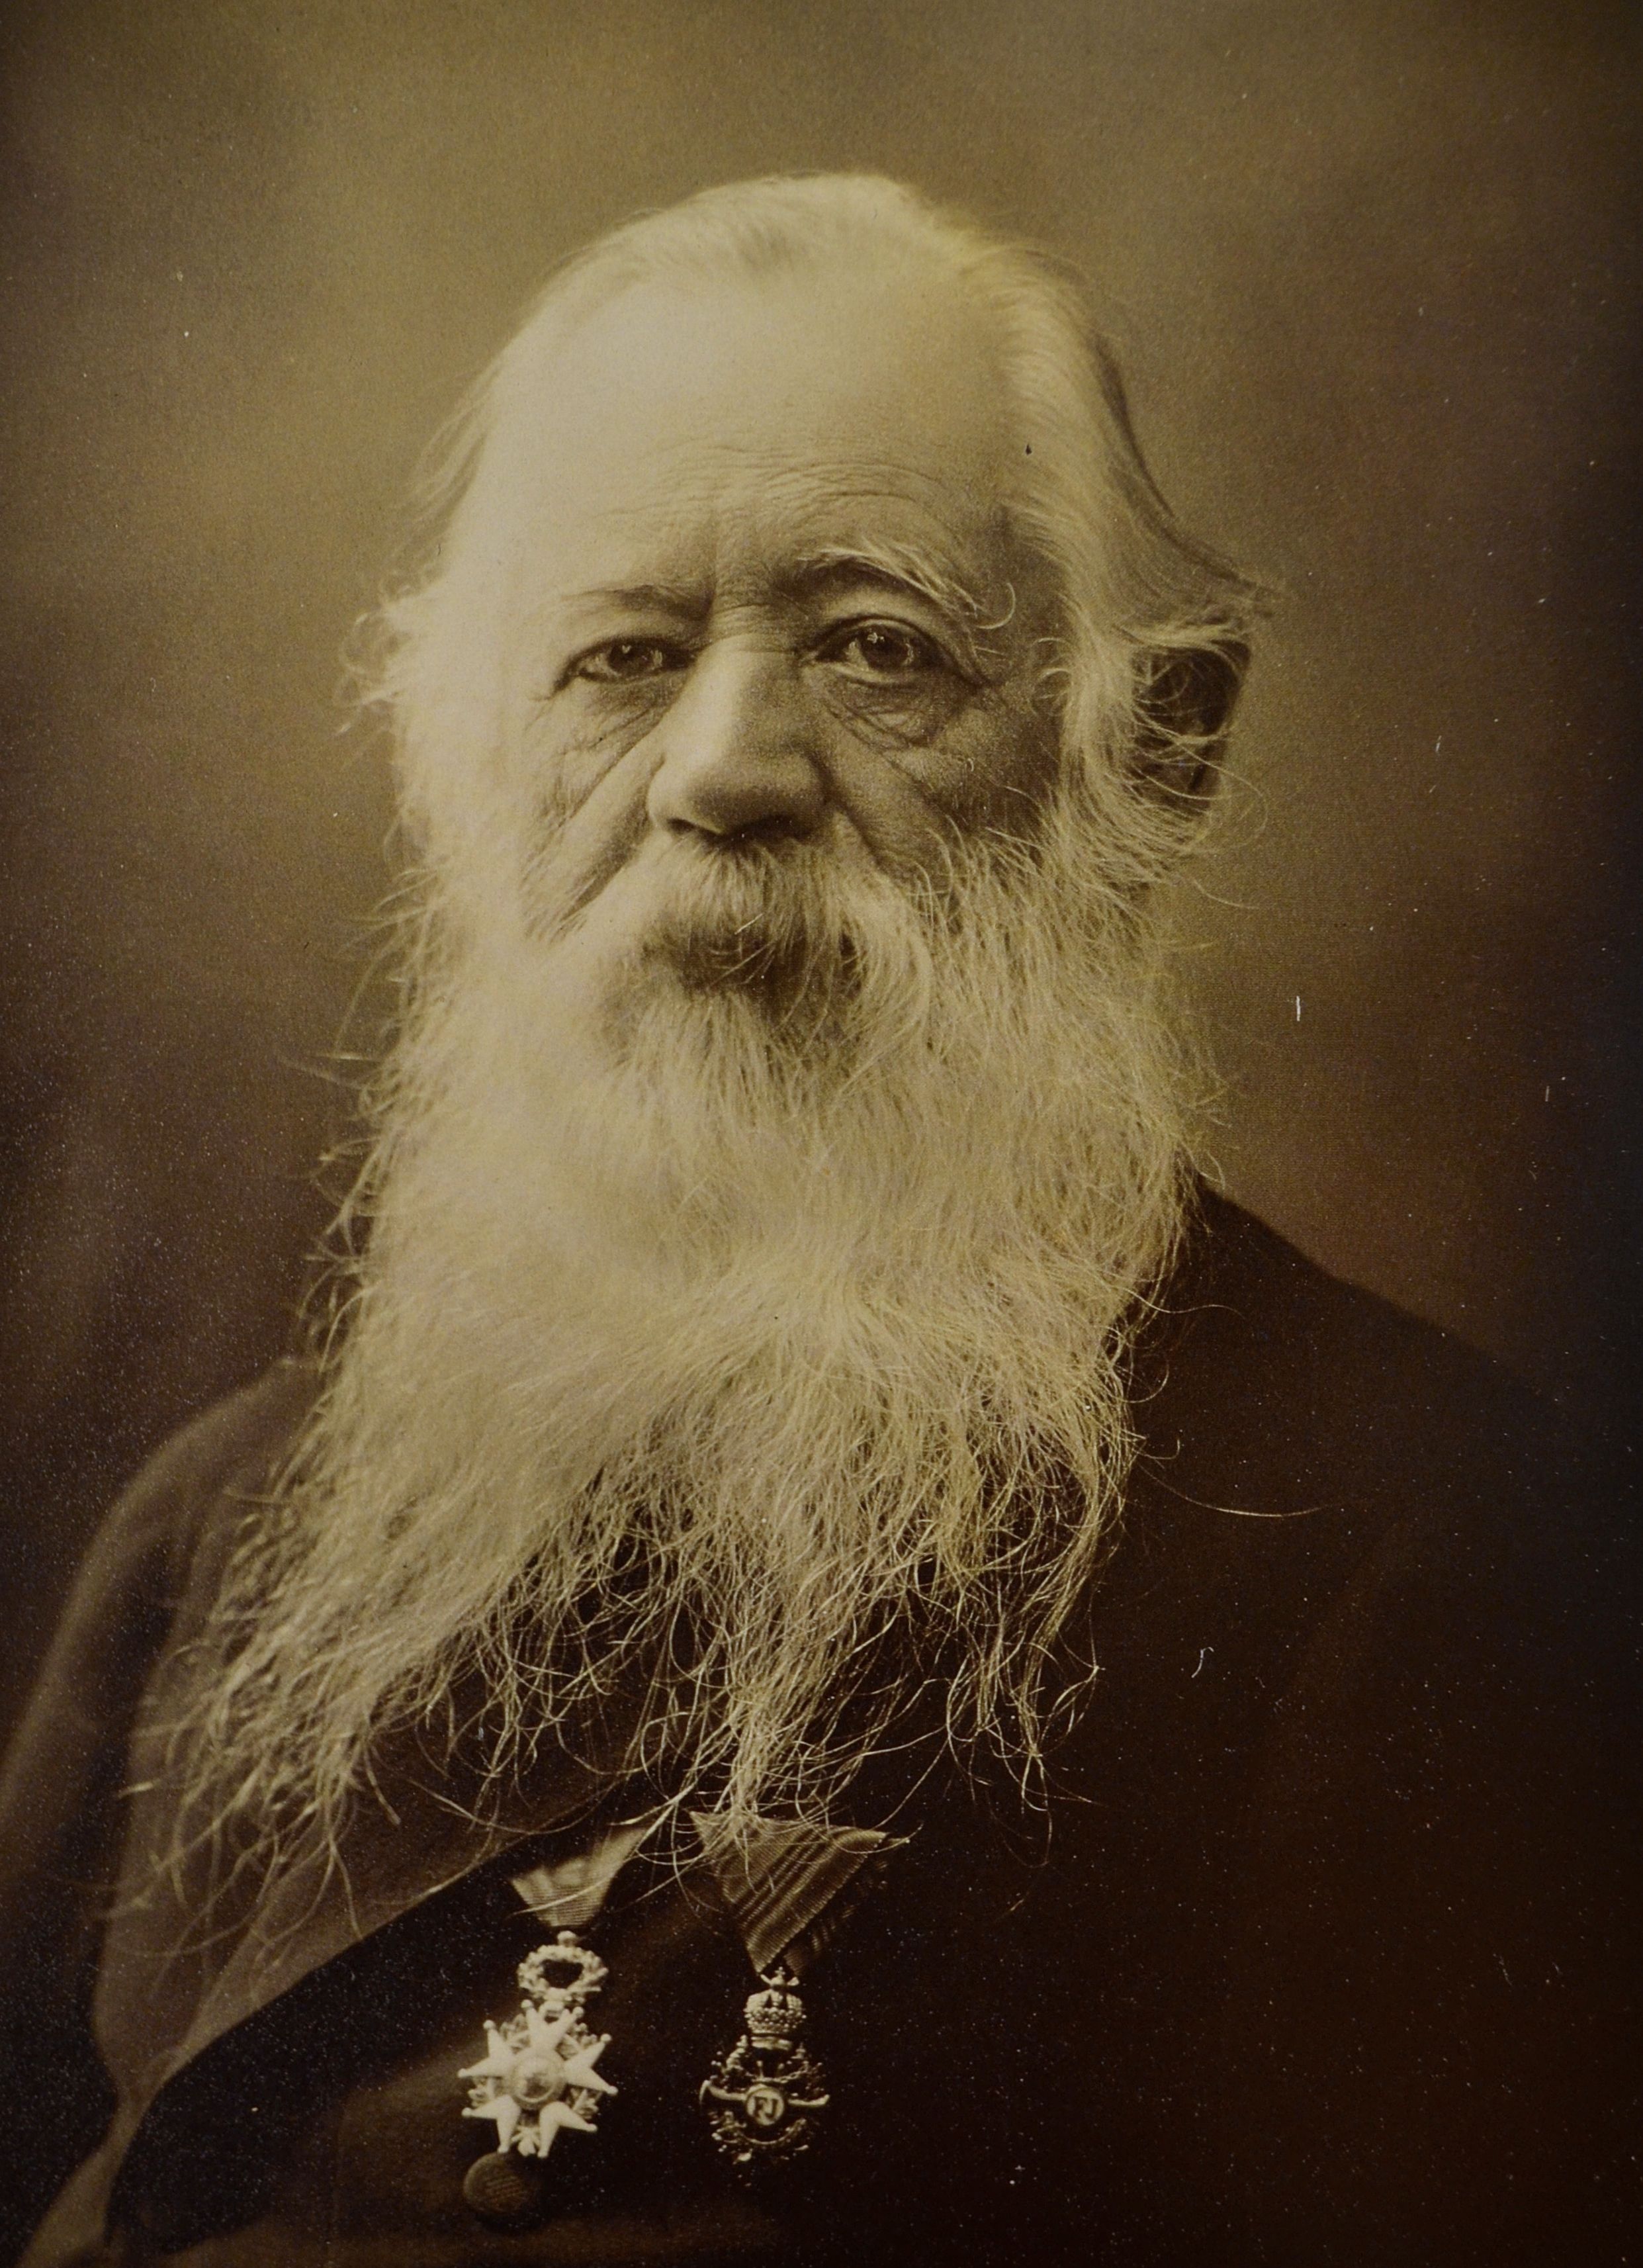 José María Velasco - 6. Juli 1840 - 26. August 1912